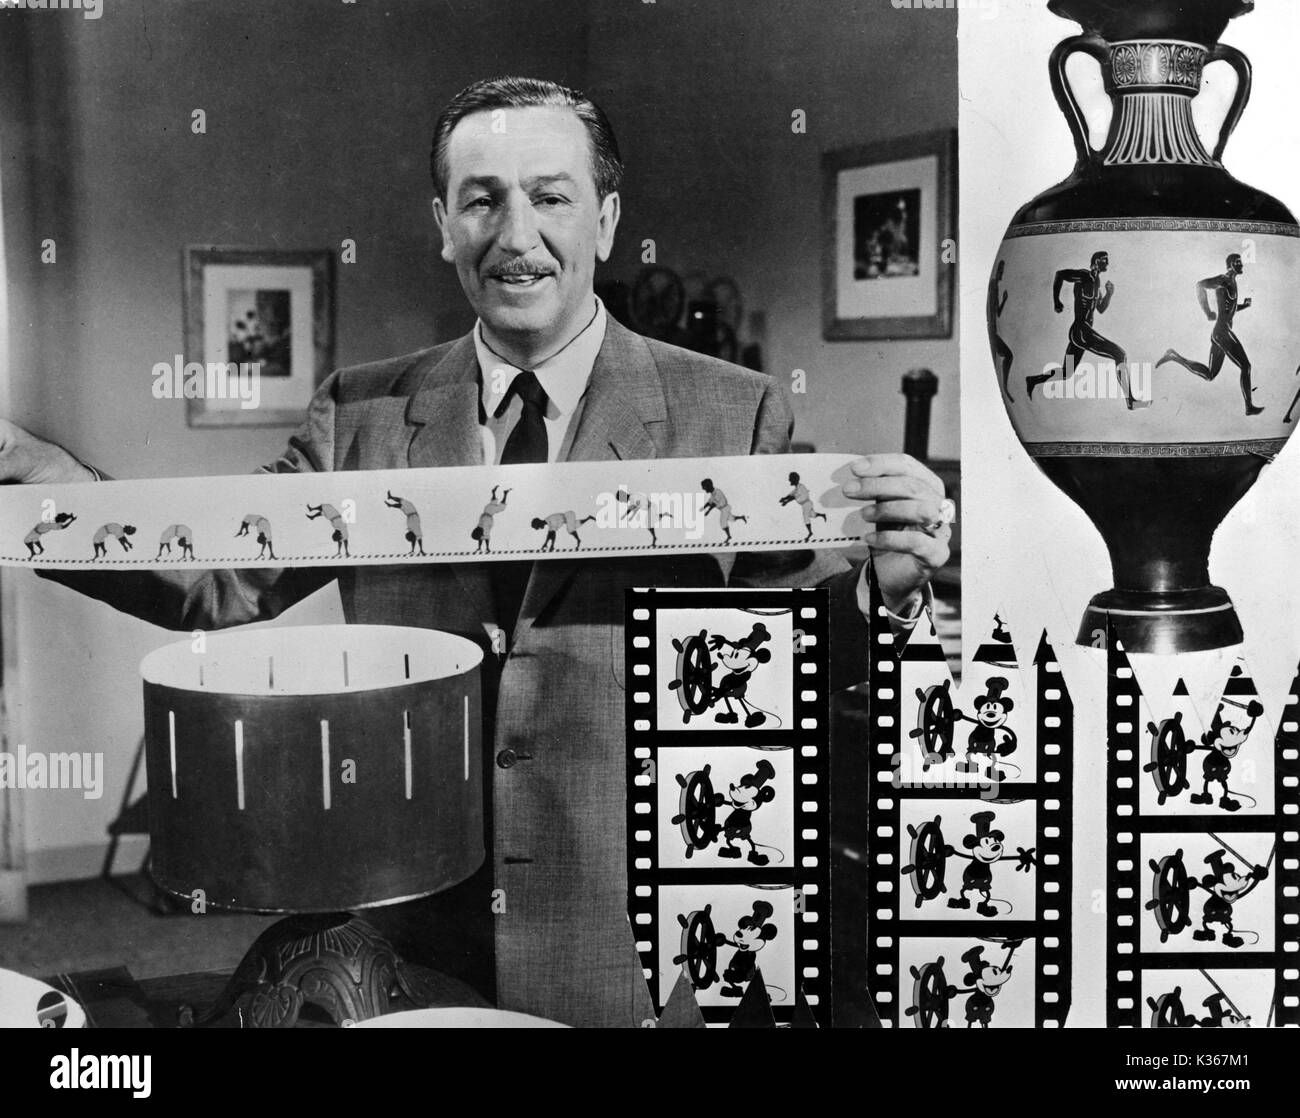 WALT DISNEY [1901-1966] Animator, Regisseur, Produzent, Studio Executive hält einen Streifen für einen zoetrope. Bildeinsatz: Frames aus der ersten Micky-Maus-Cartoon, der teamboat Willie' WALT DISNEY Stockfoto